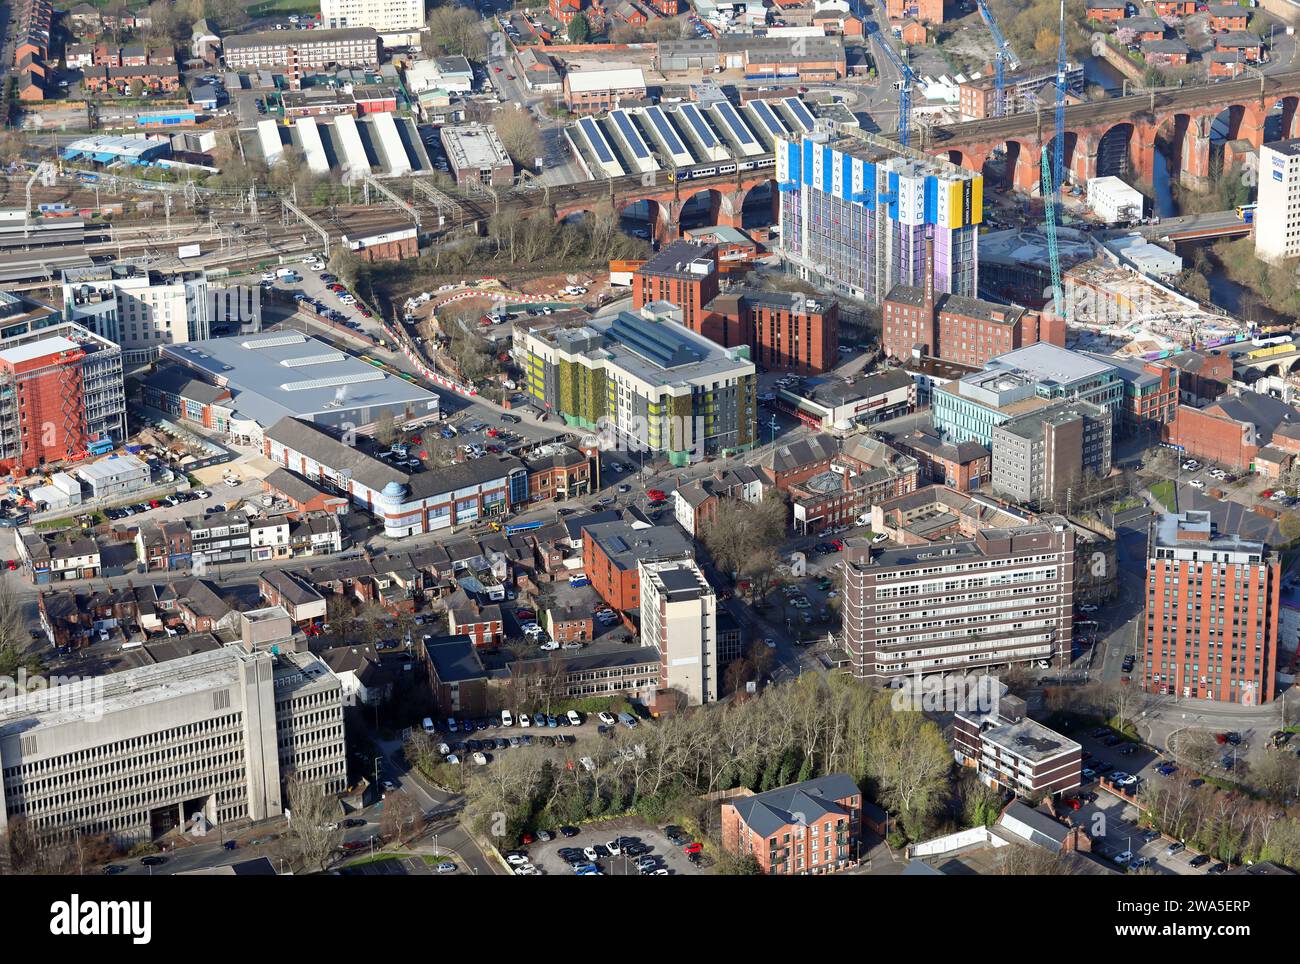 Aus der Vogelperspektive vom Osten des Stockport Stadtzentrums, Greater Manchester. Blick über die A6 Wellington Road in Richtung Eisenbahnviadukt. Stockfoto